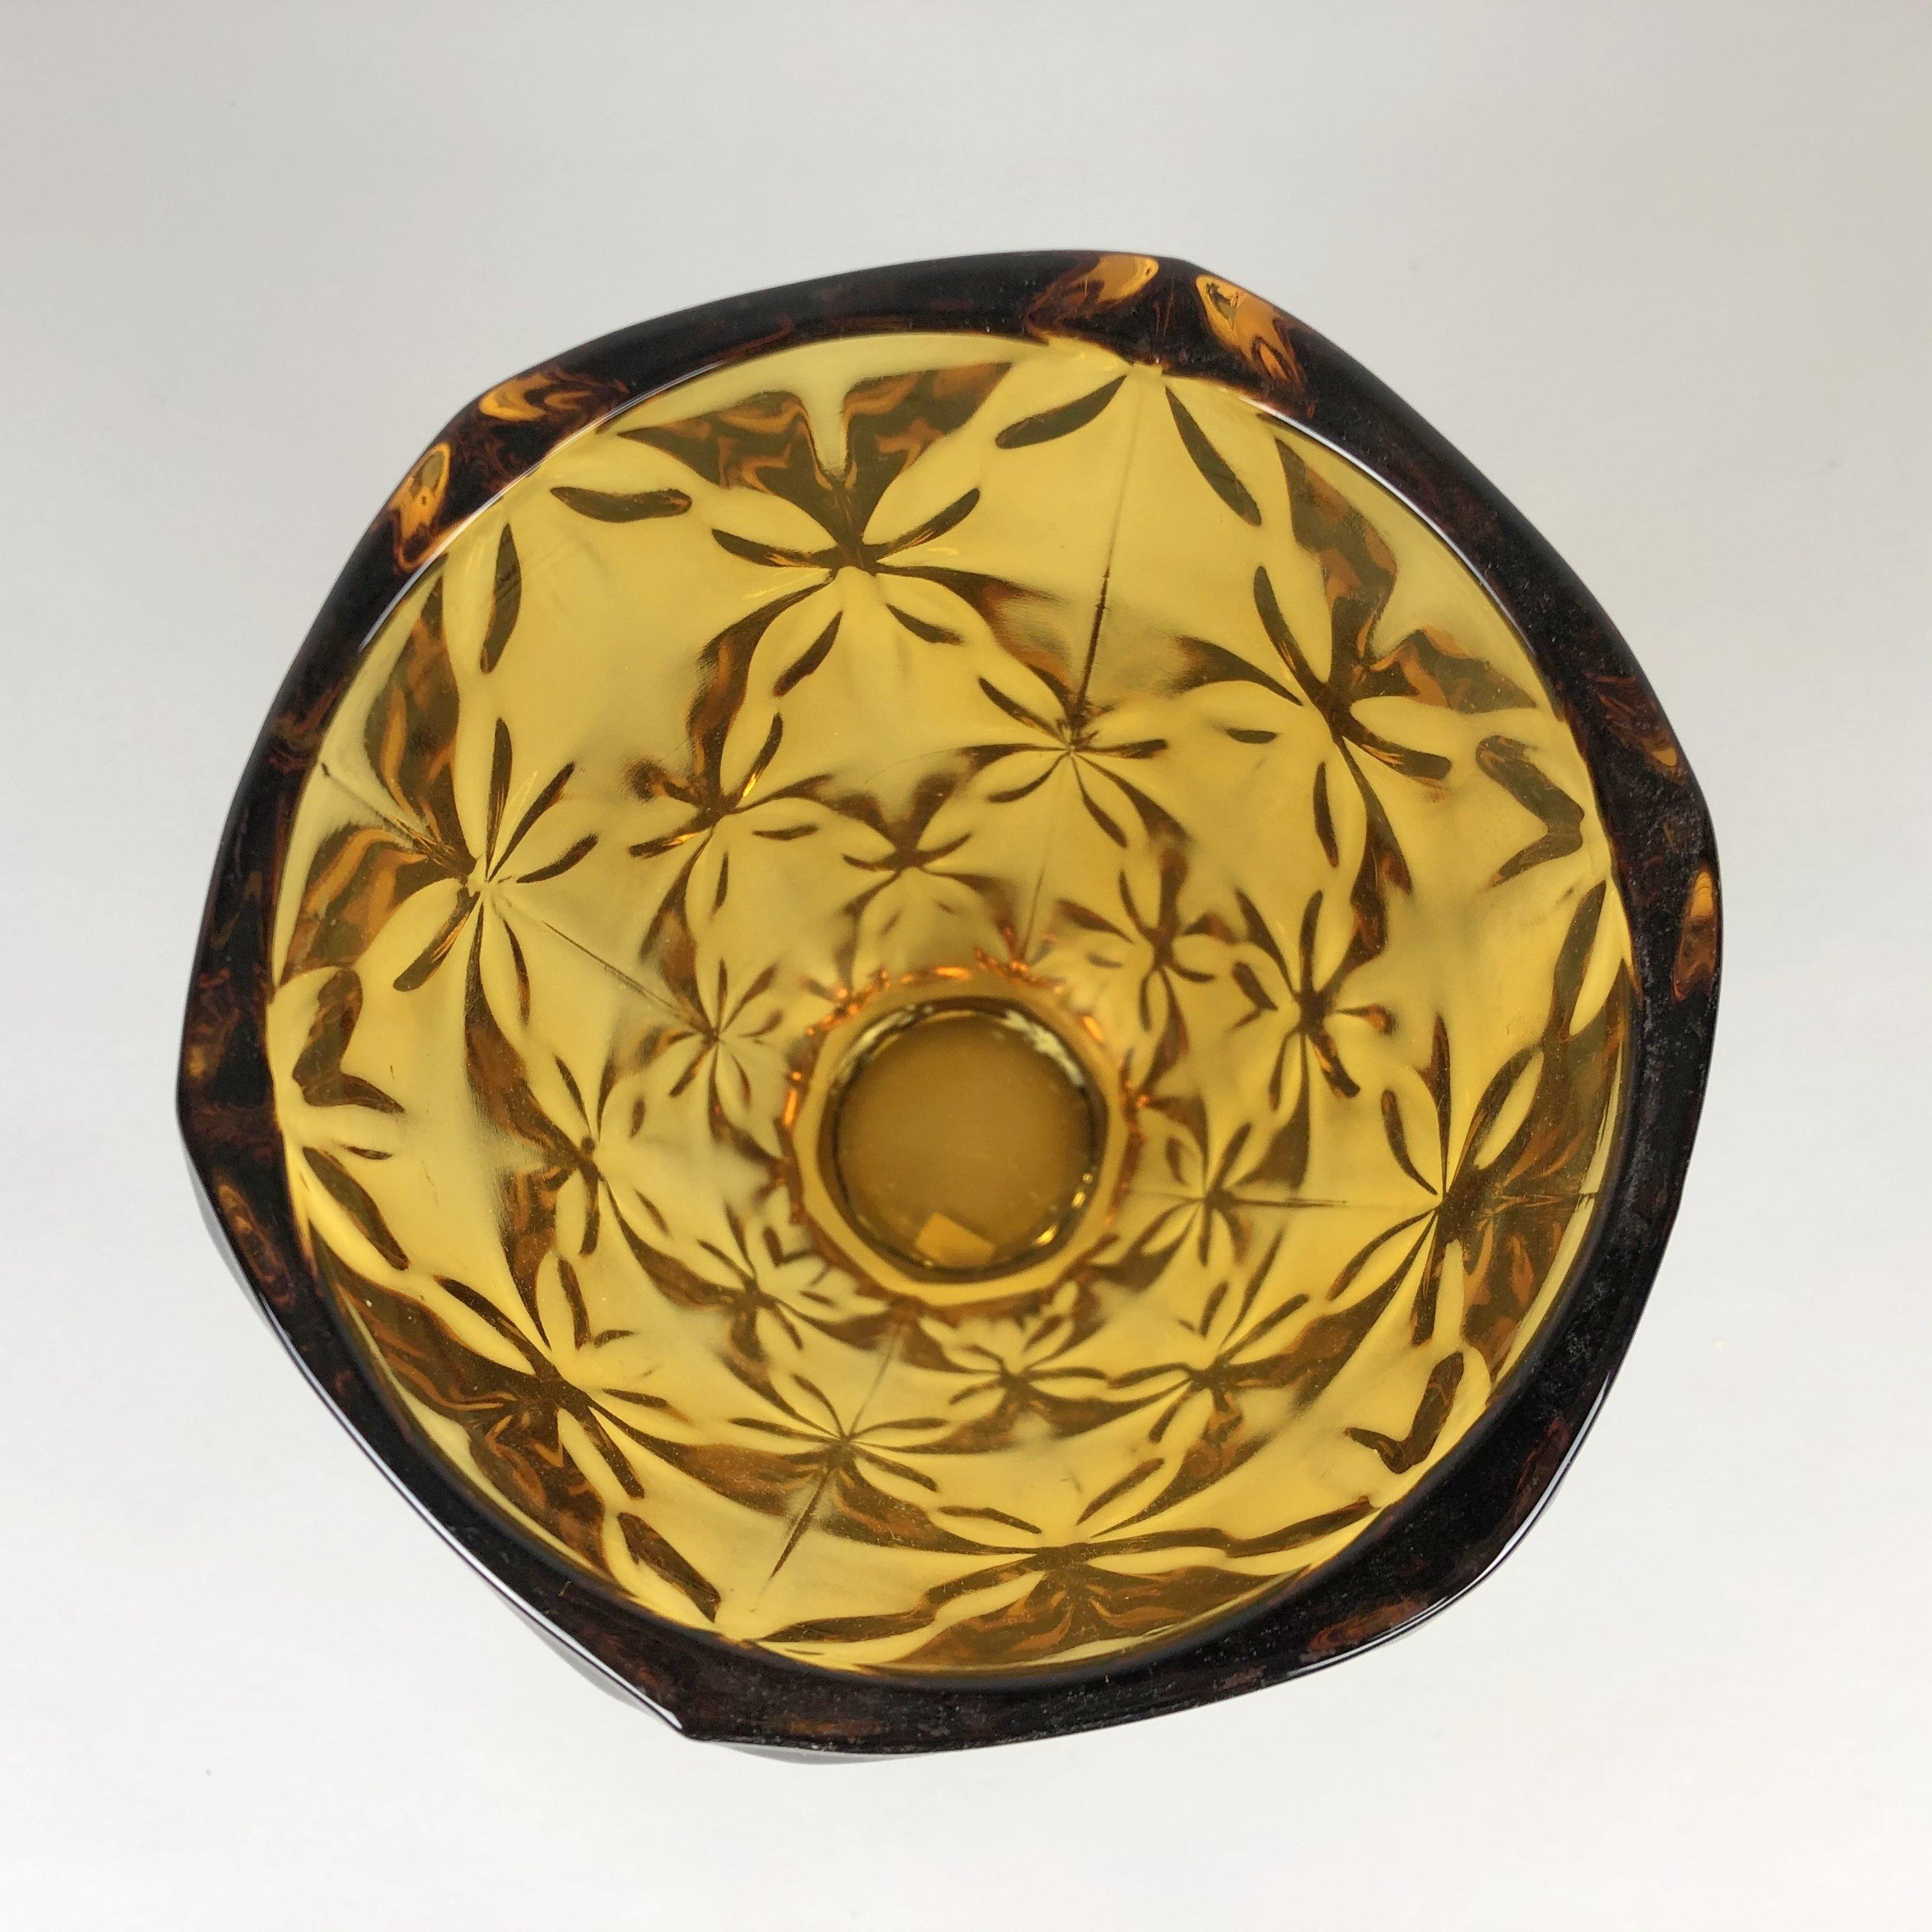 amber glass vase vintage